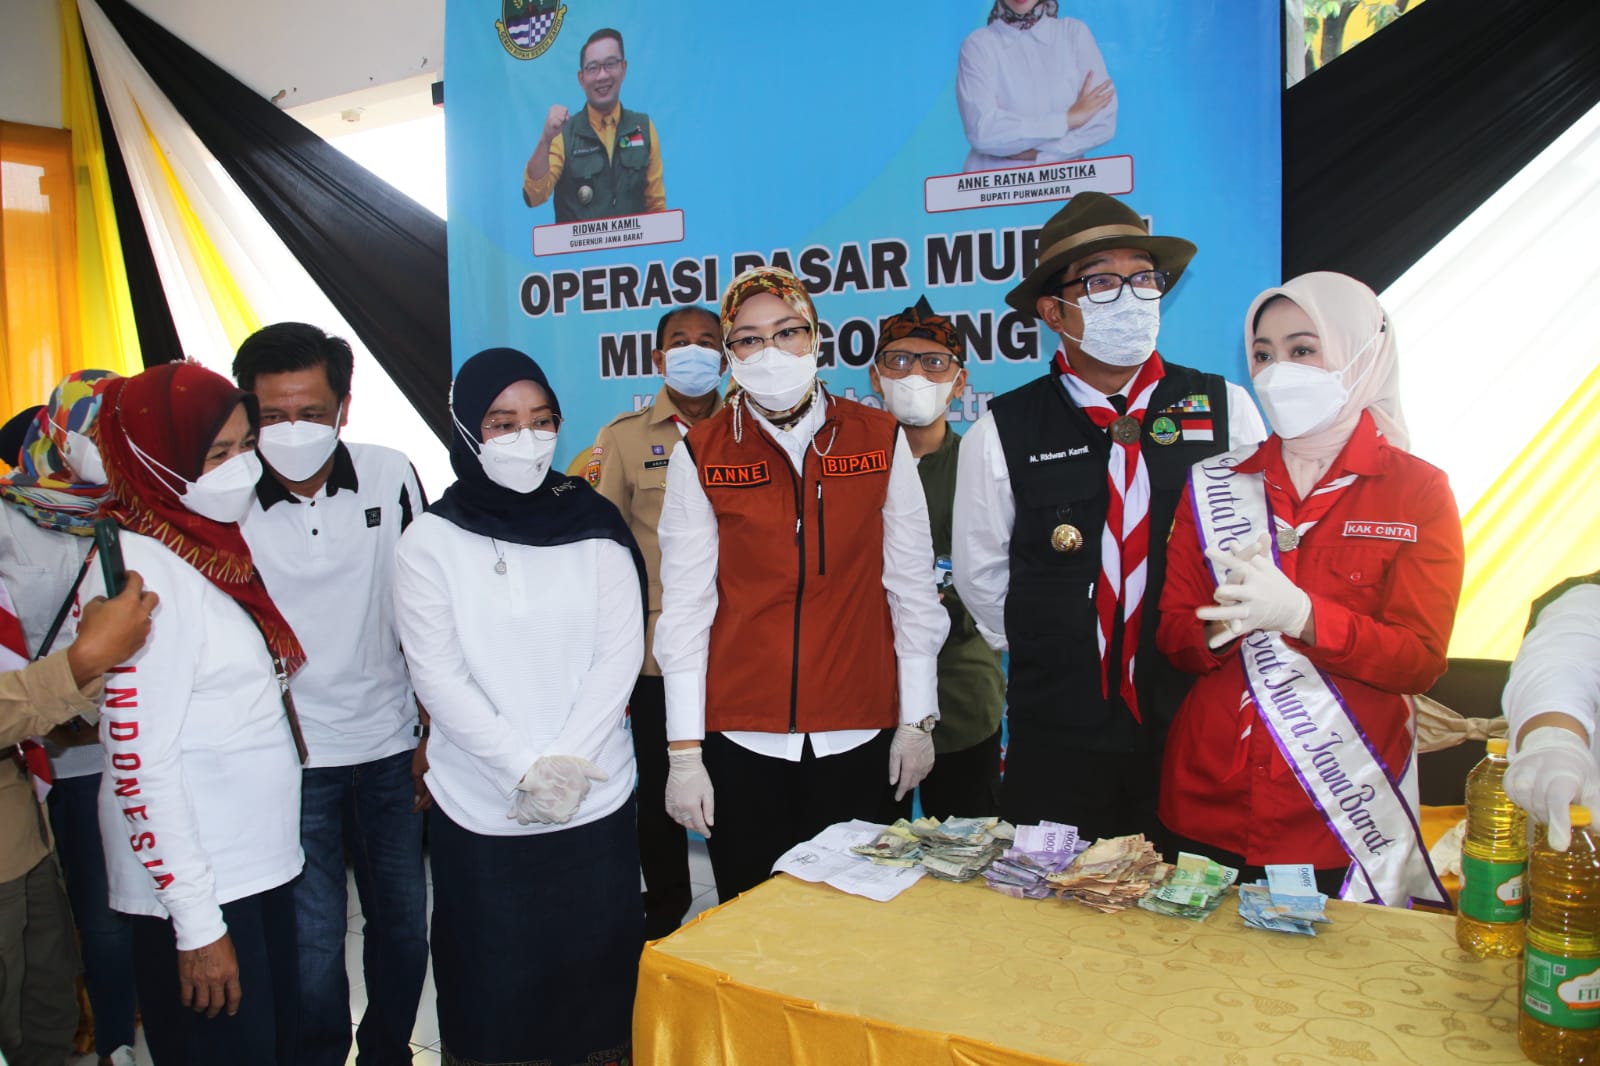 Operasi Pasar Minyak Murah di Purwakarta, Pemerintah Gelontorkan 7.200 Liter Minyak Goreng